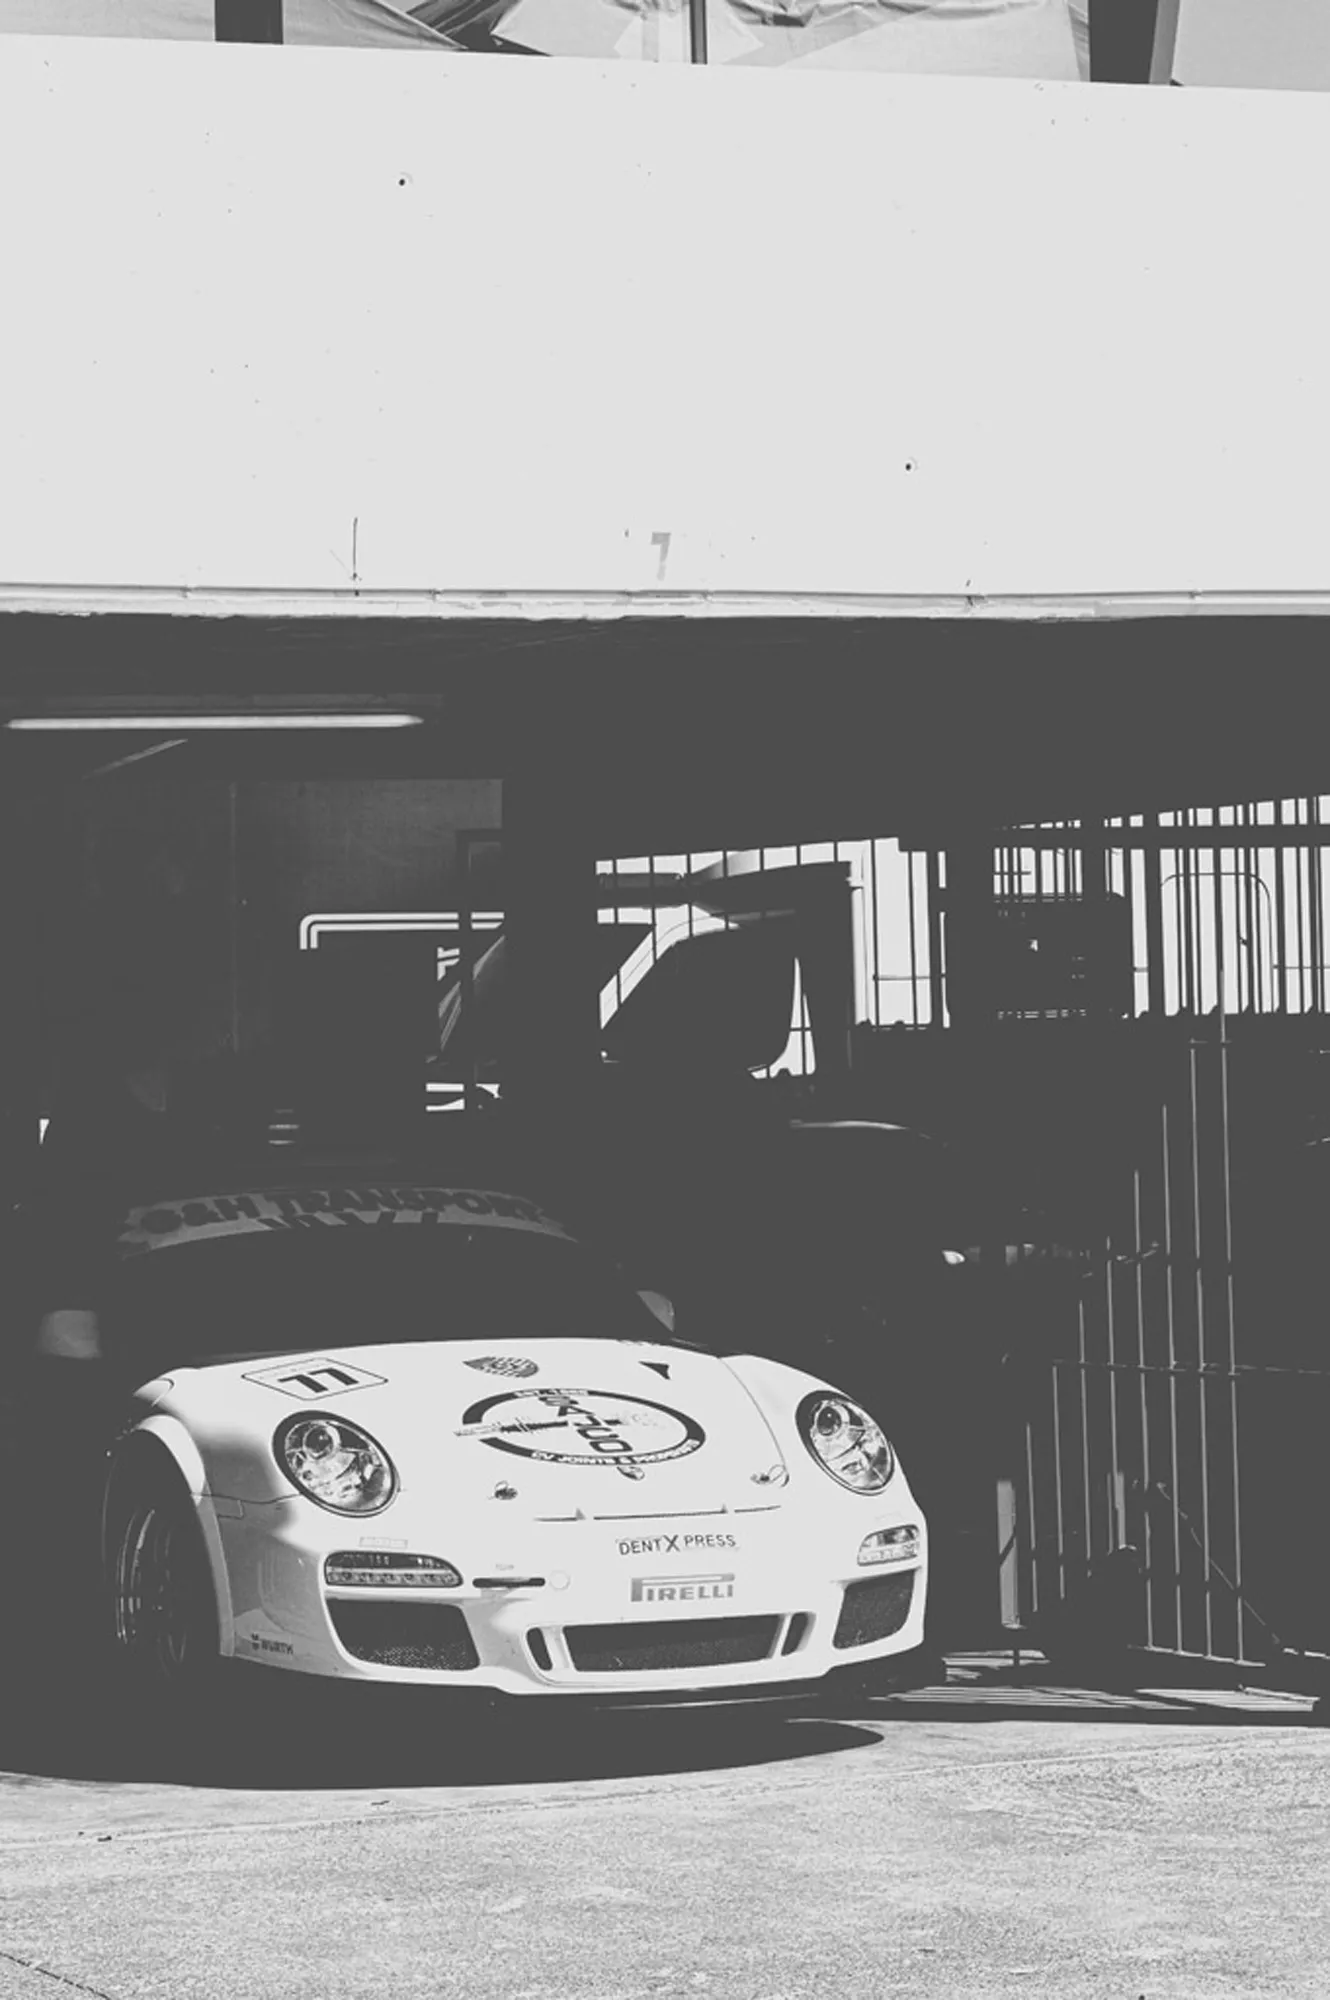 2019-07-27 - Zwartkops Raceway - Porsche in garage